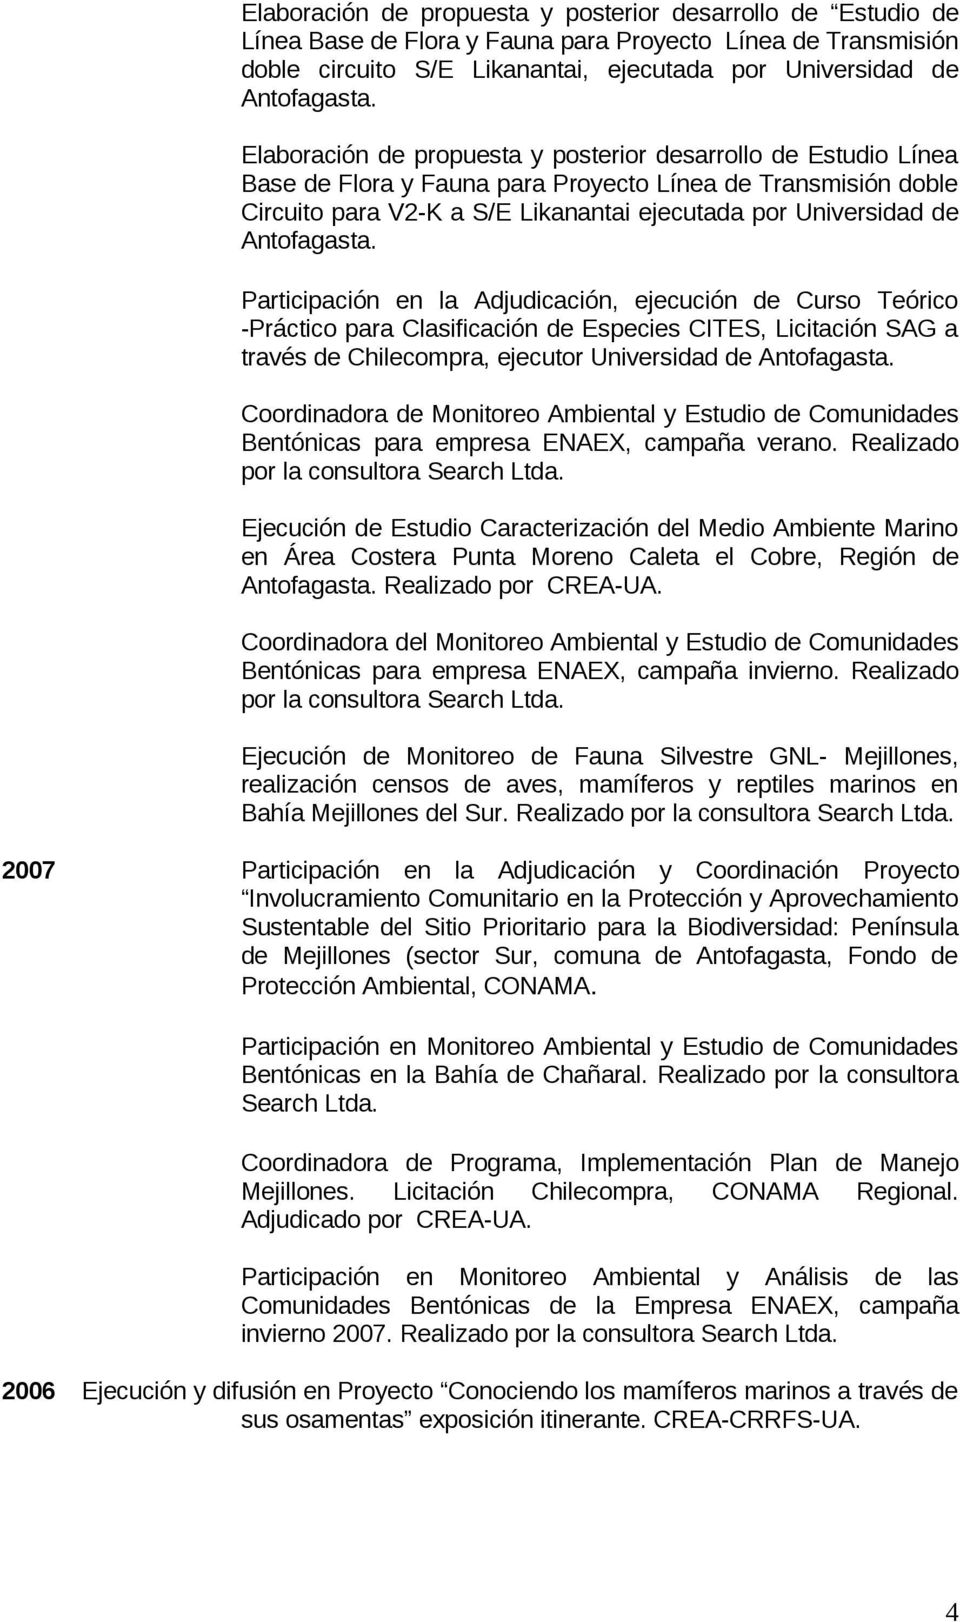 Antofagasta. Participación en la Adjudicación, ejecución de Curso Teórico -Práctico para Clasificación de Especies CITES, Licitación SAG a través de Chilecompra, ejecutor Universidad de Antofagasta.